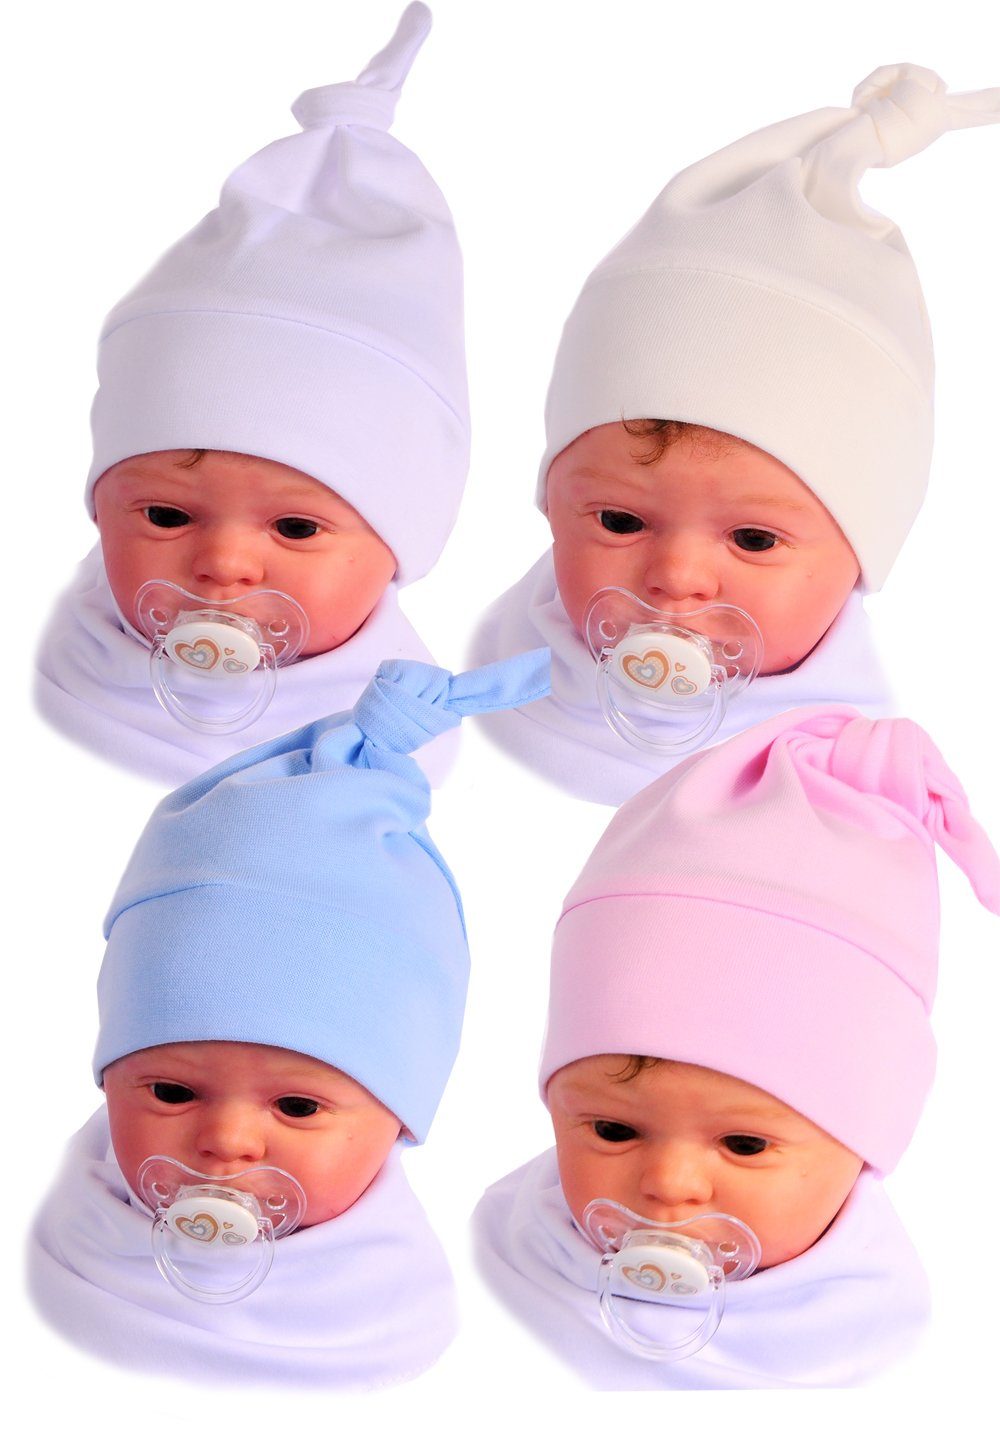 La Bortini Erstlingsmütze Baby Mütze Baby Mützchen Knotenmütze für Neugeborene Weiß